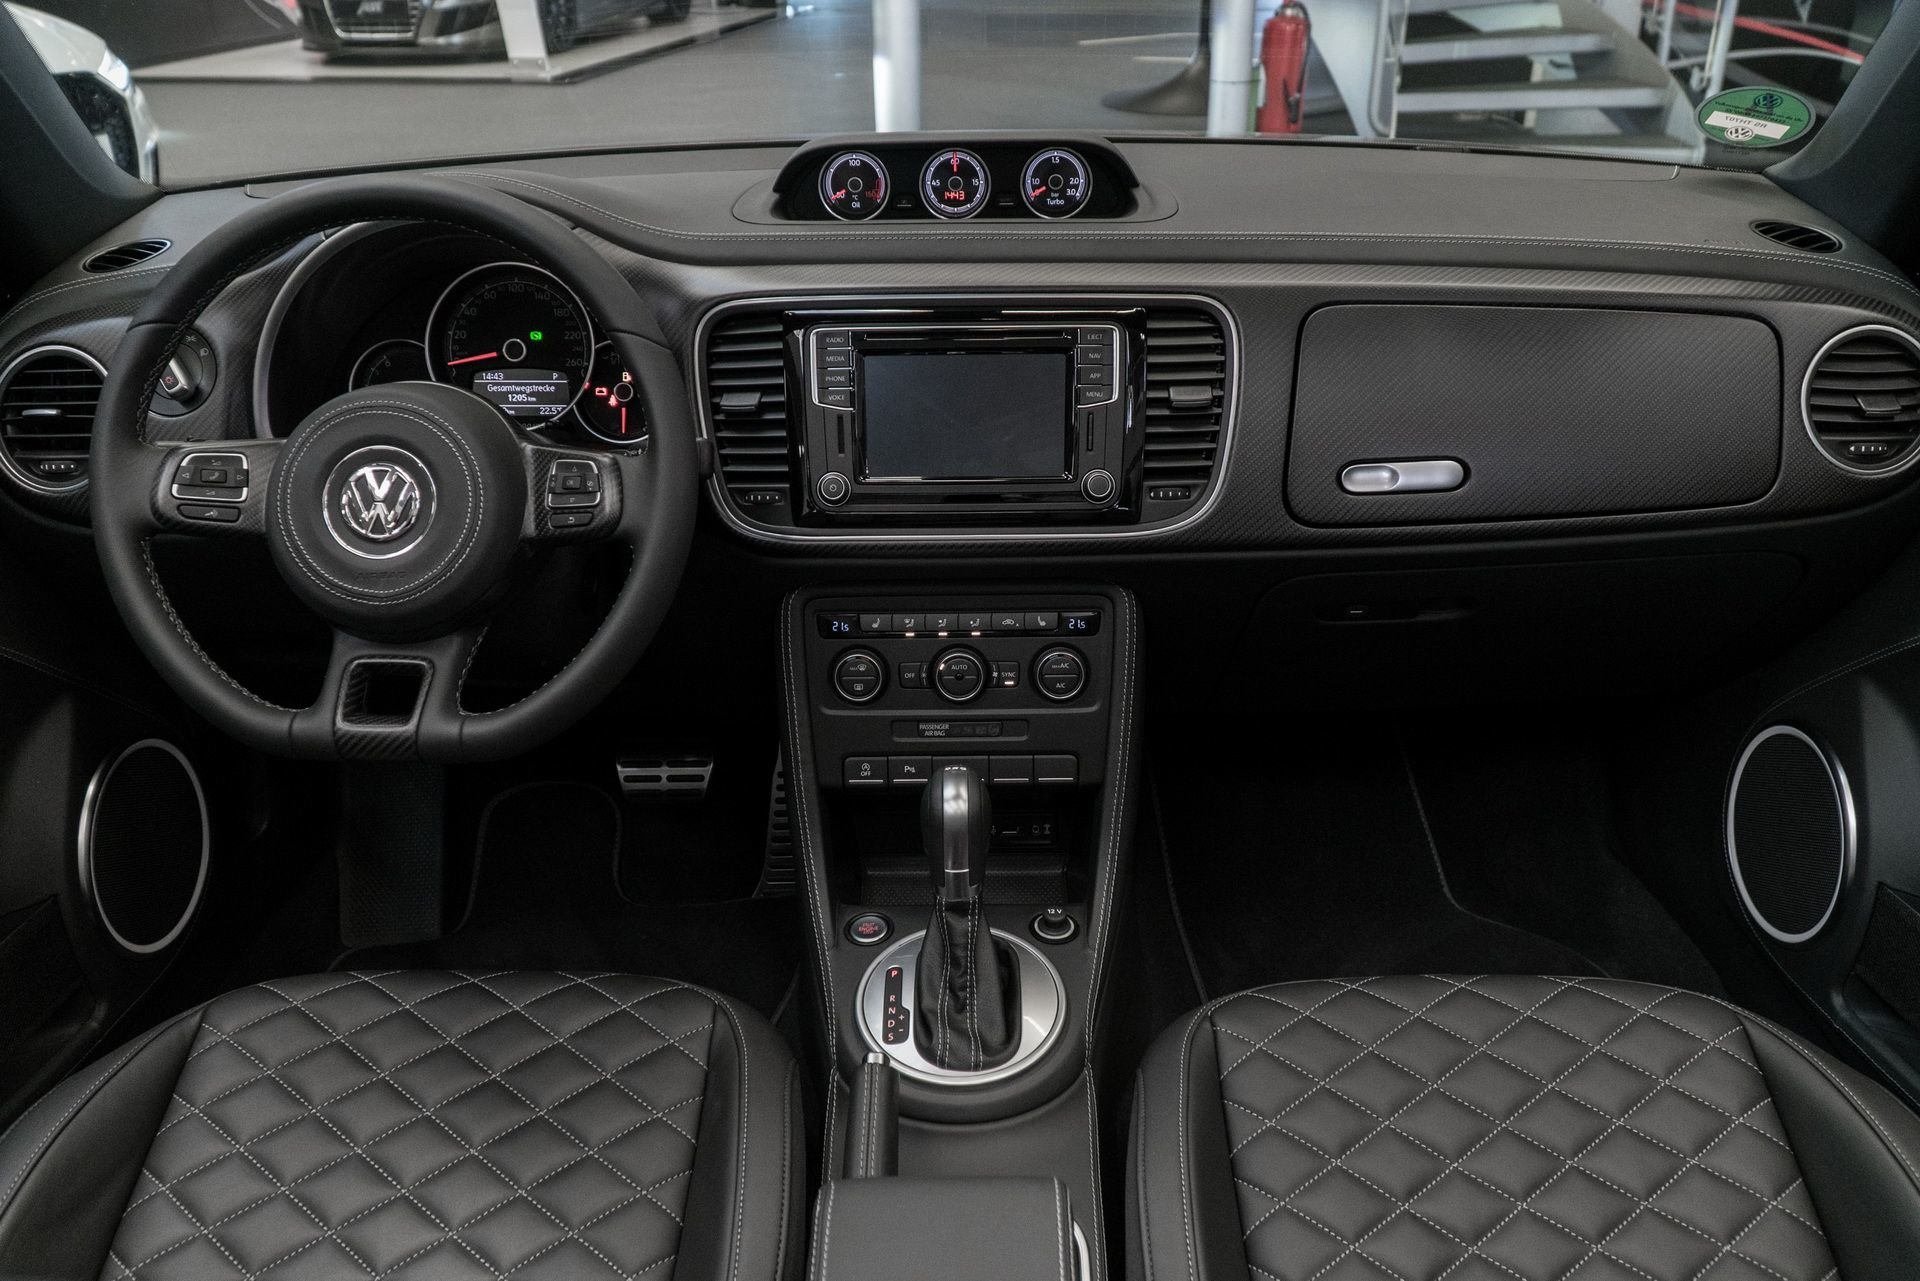 Volkswagen Beetle v jedinečné úpravě společnosti ABT ukrývá pod kapotou 290 koní